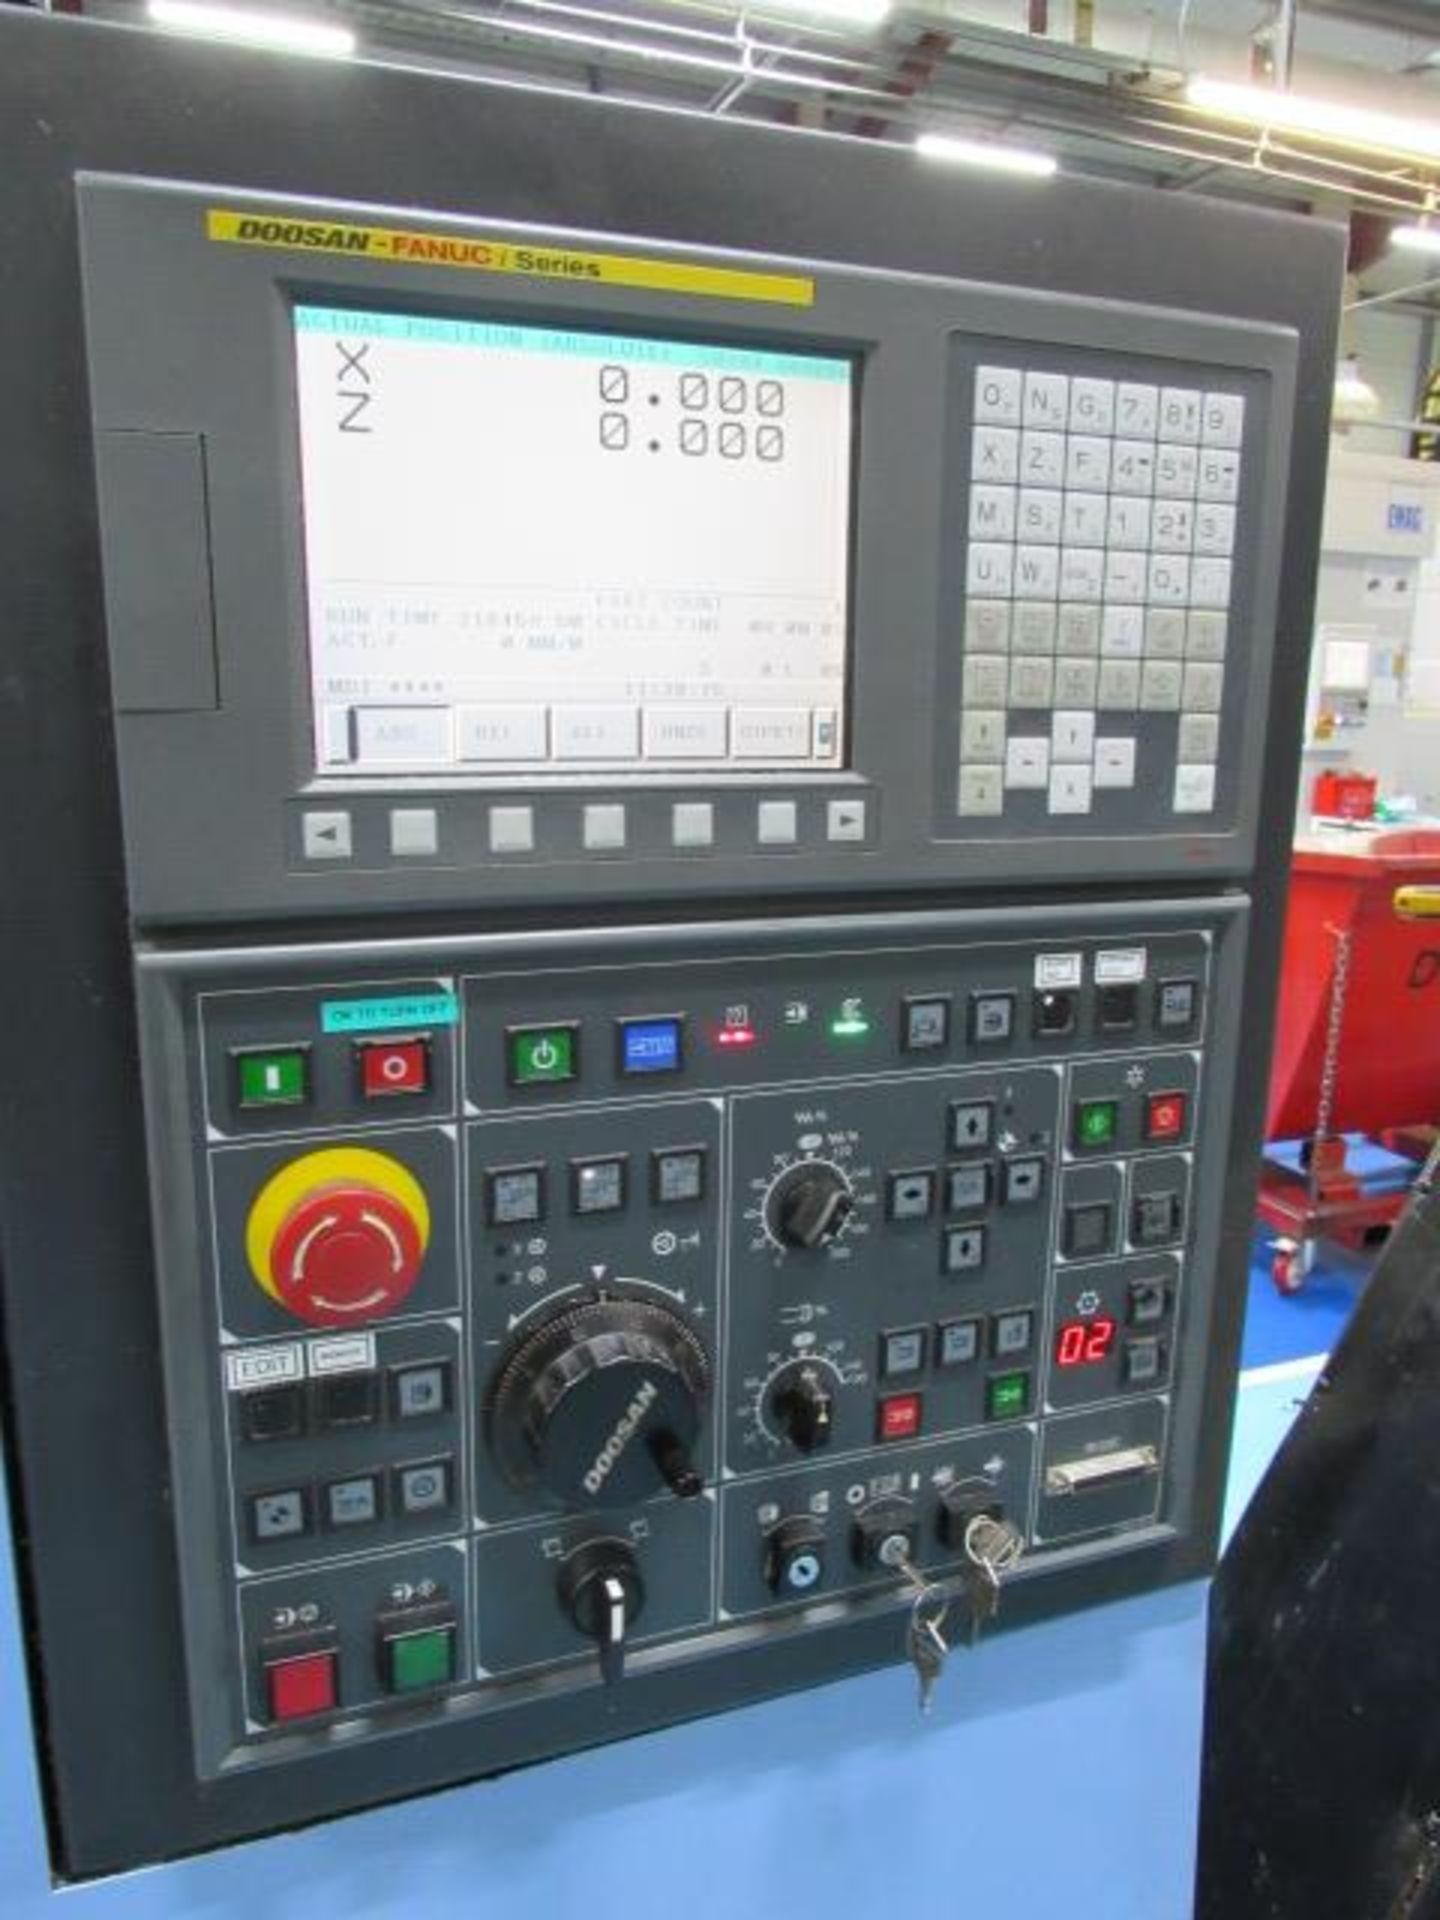 Doosan Lynx 220 B/C CNC Turning Center - Image 7 of 7